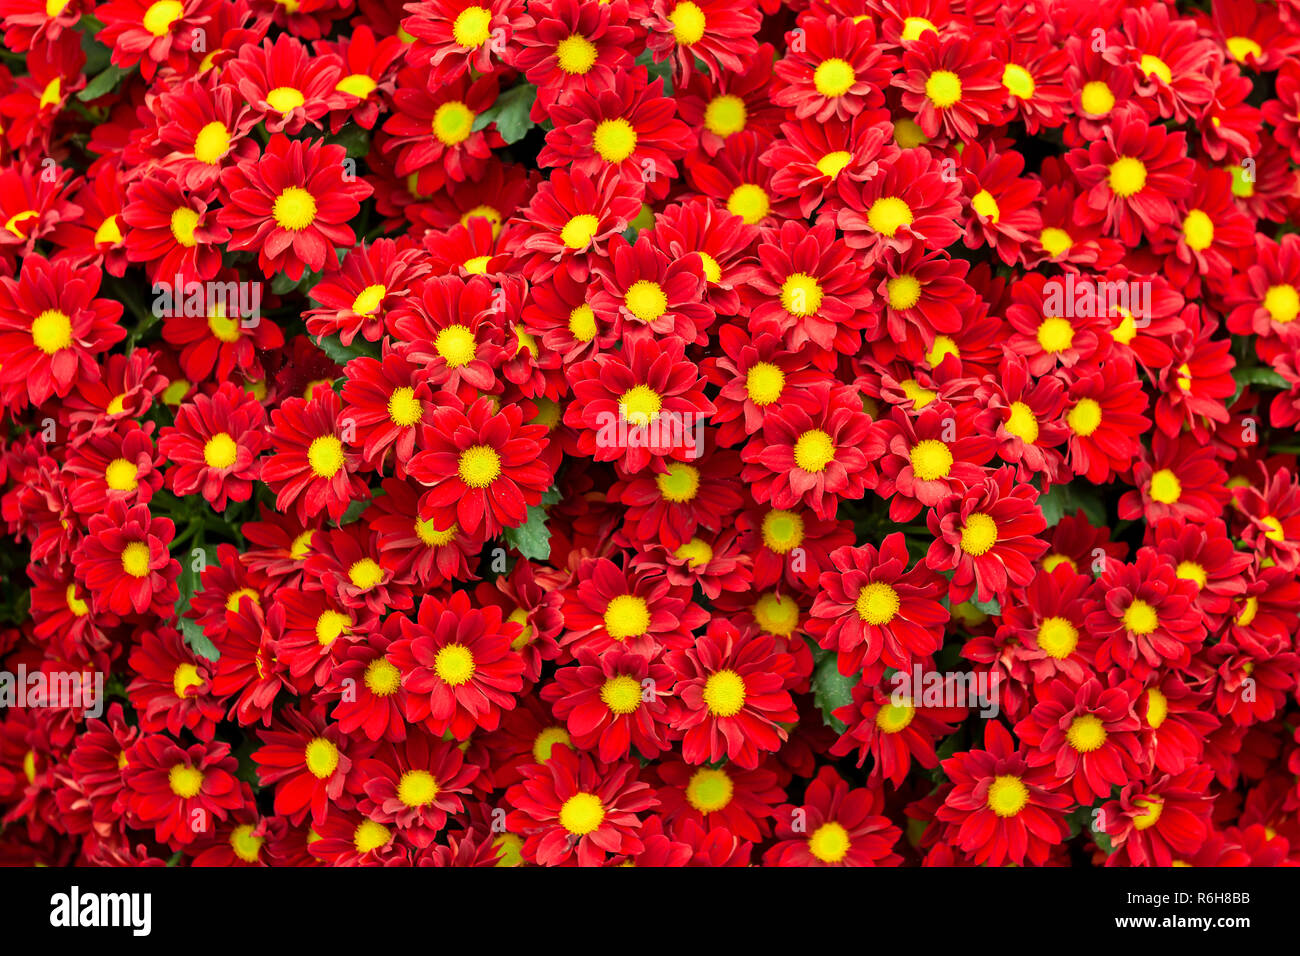 Viele rote Chrysantheme Blumen in einem großen Bündel. Hell gefärbten Blüten mit gelbem Zentrum füllen das Bild. Stockfoto